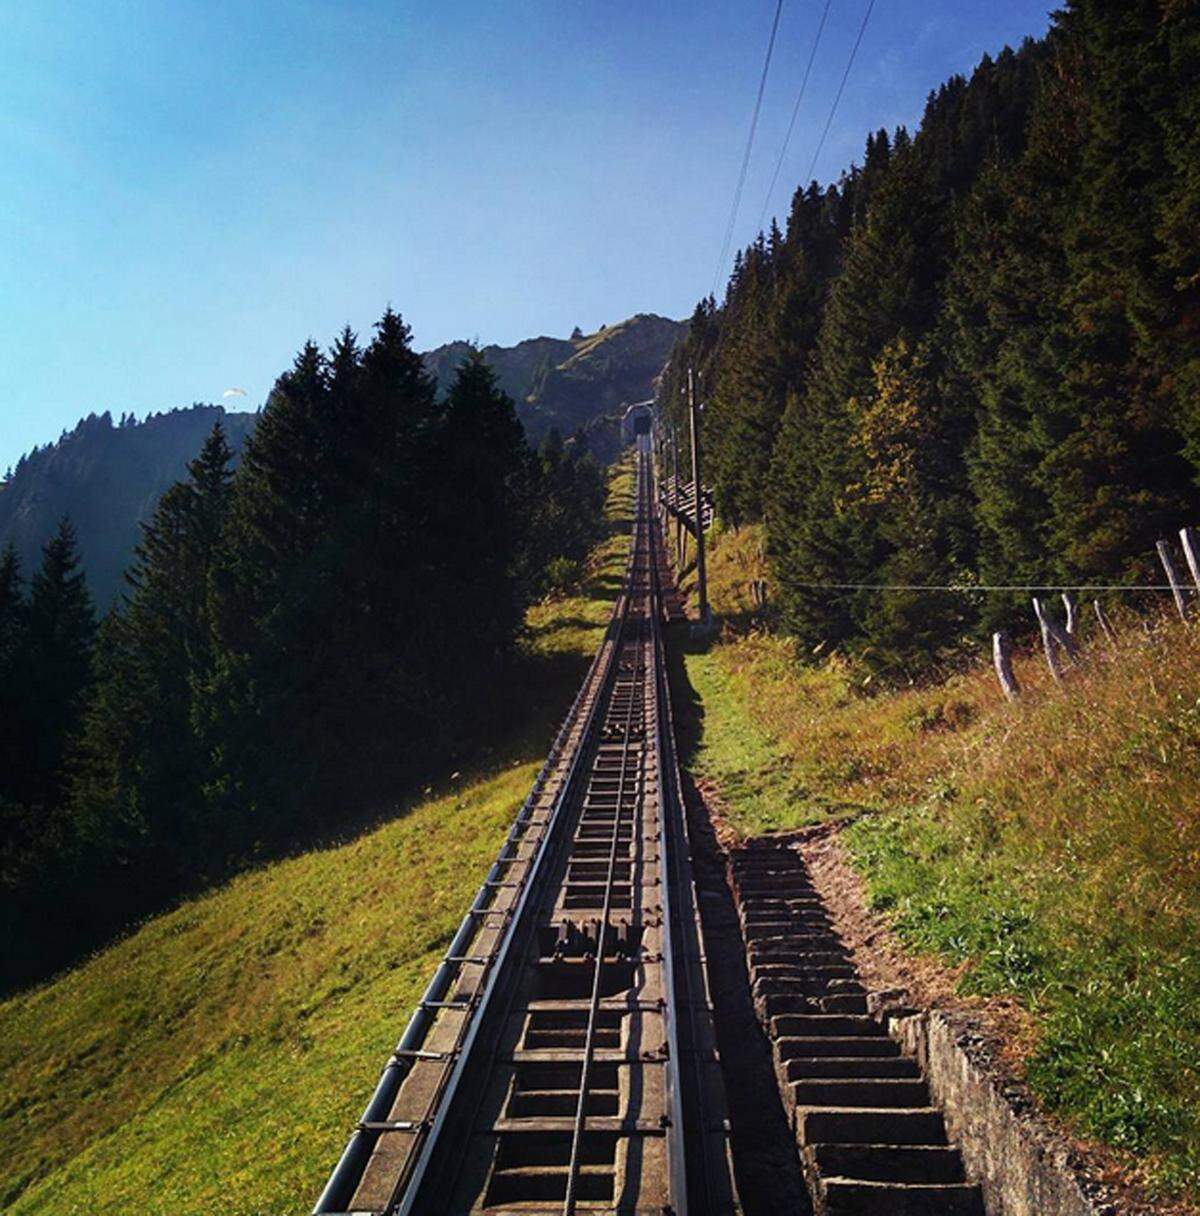 Unglaubliche 11.674 Stufen führen entlang der Niesenbahn in der Schweiz auf den Berg Niesen. 3,4 Kilometer kann man so zurücklegen, allerdings nur einmal im Jahr im Zuge des Niesenlaufs.